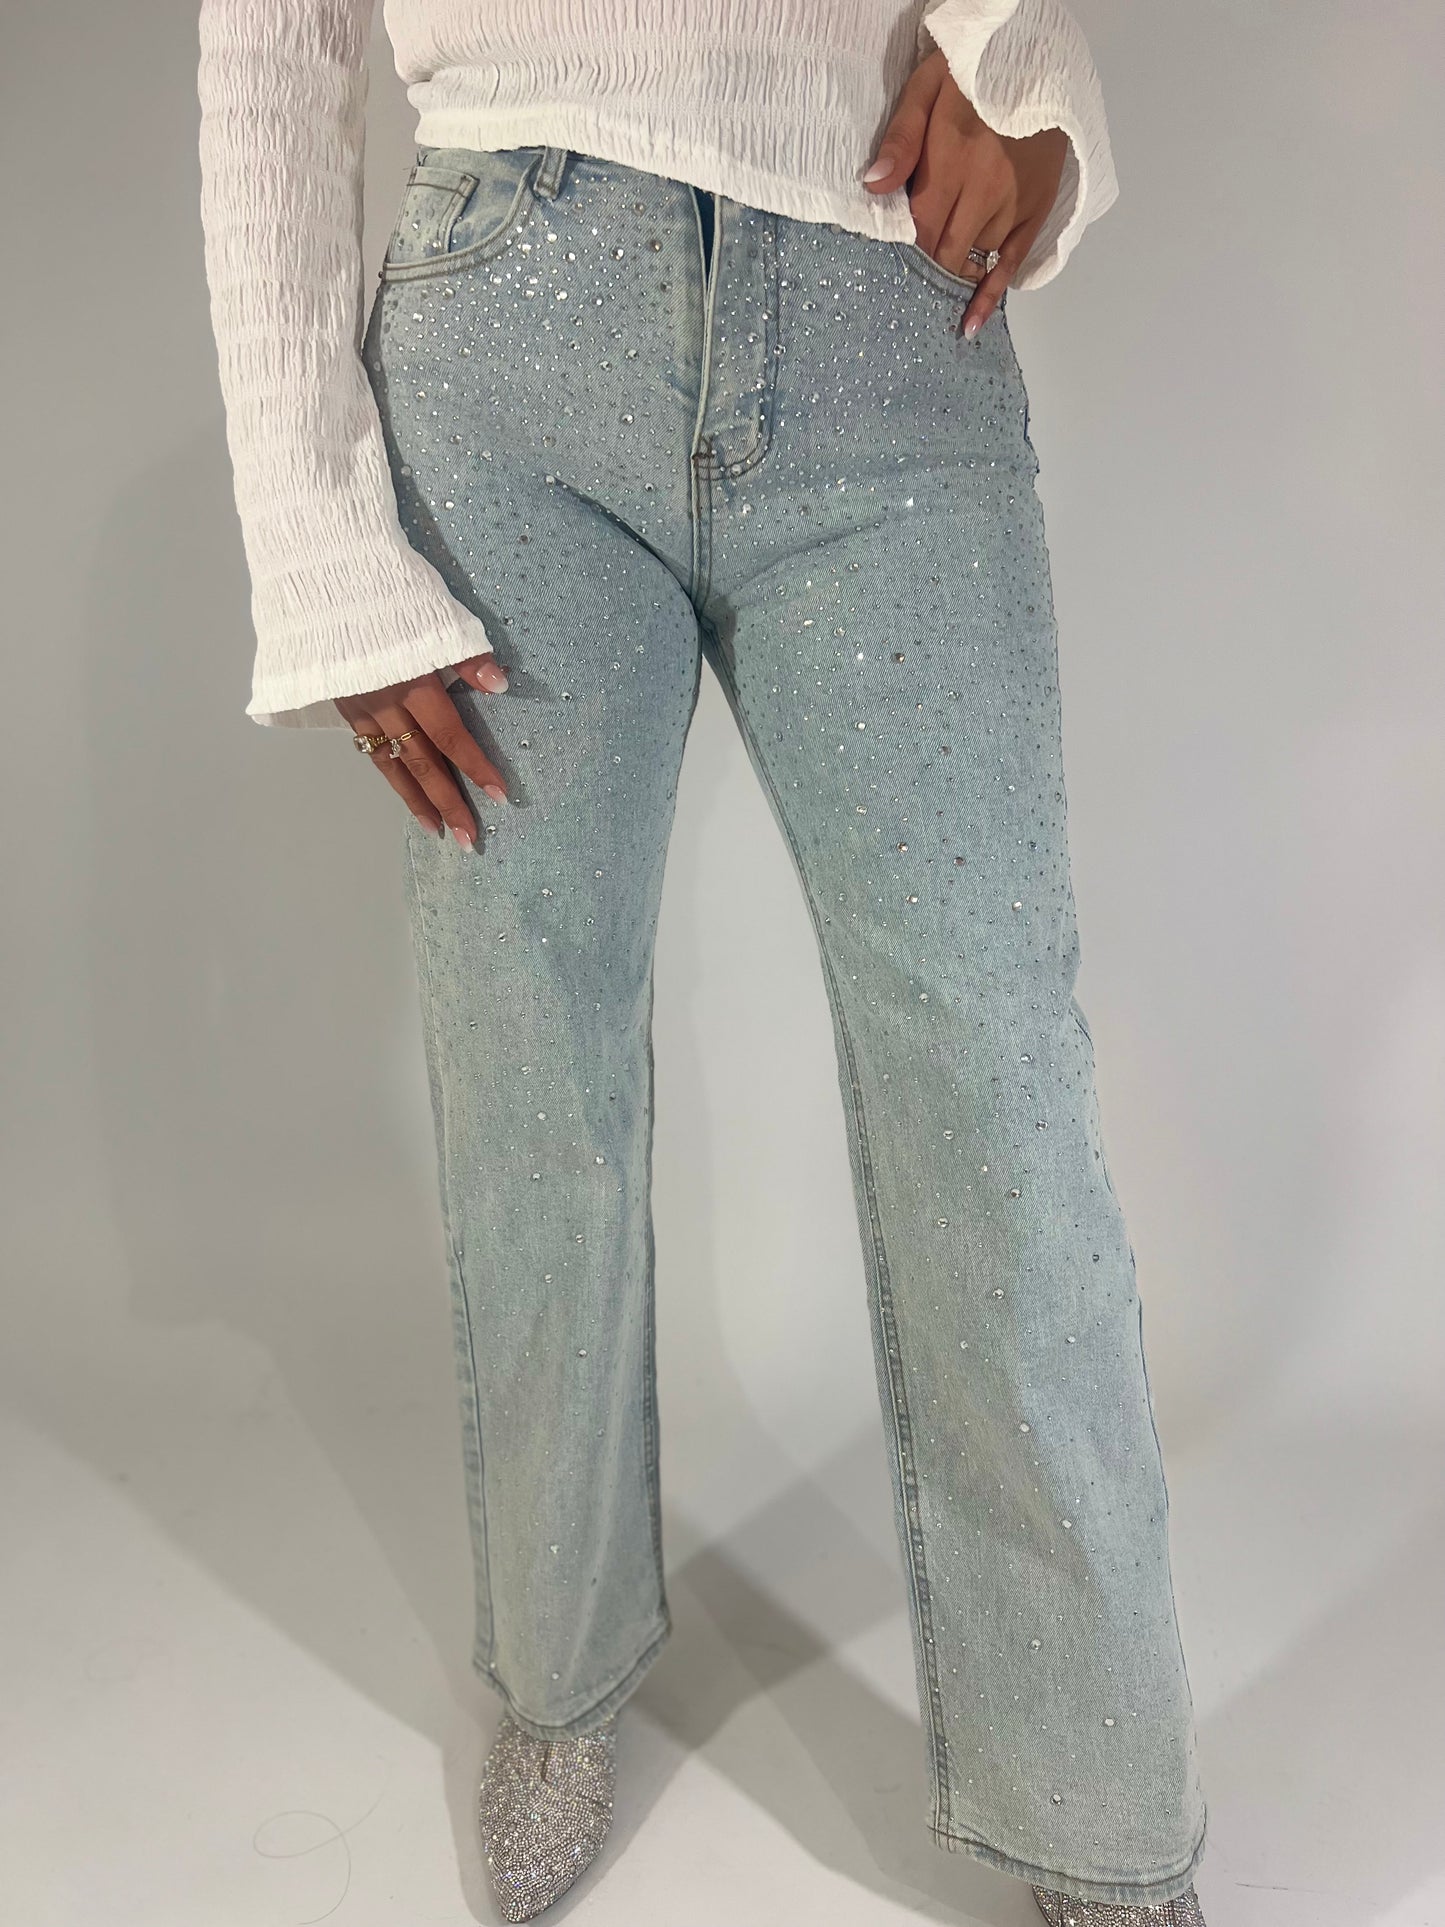 Arriana’s rhinestone stretch jeans